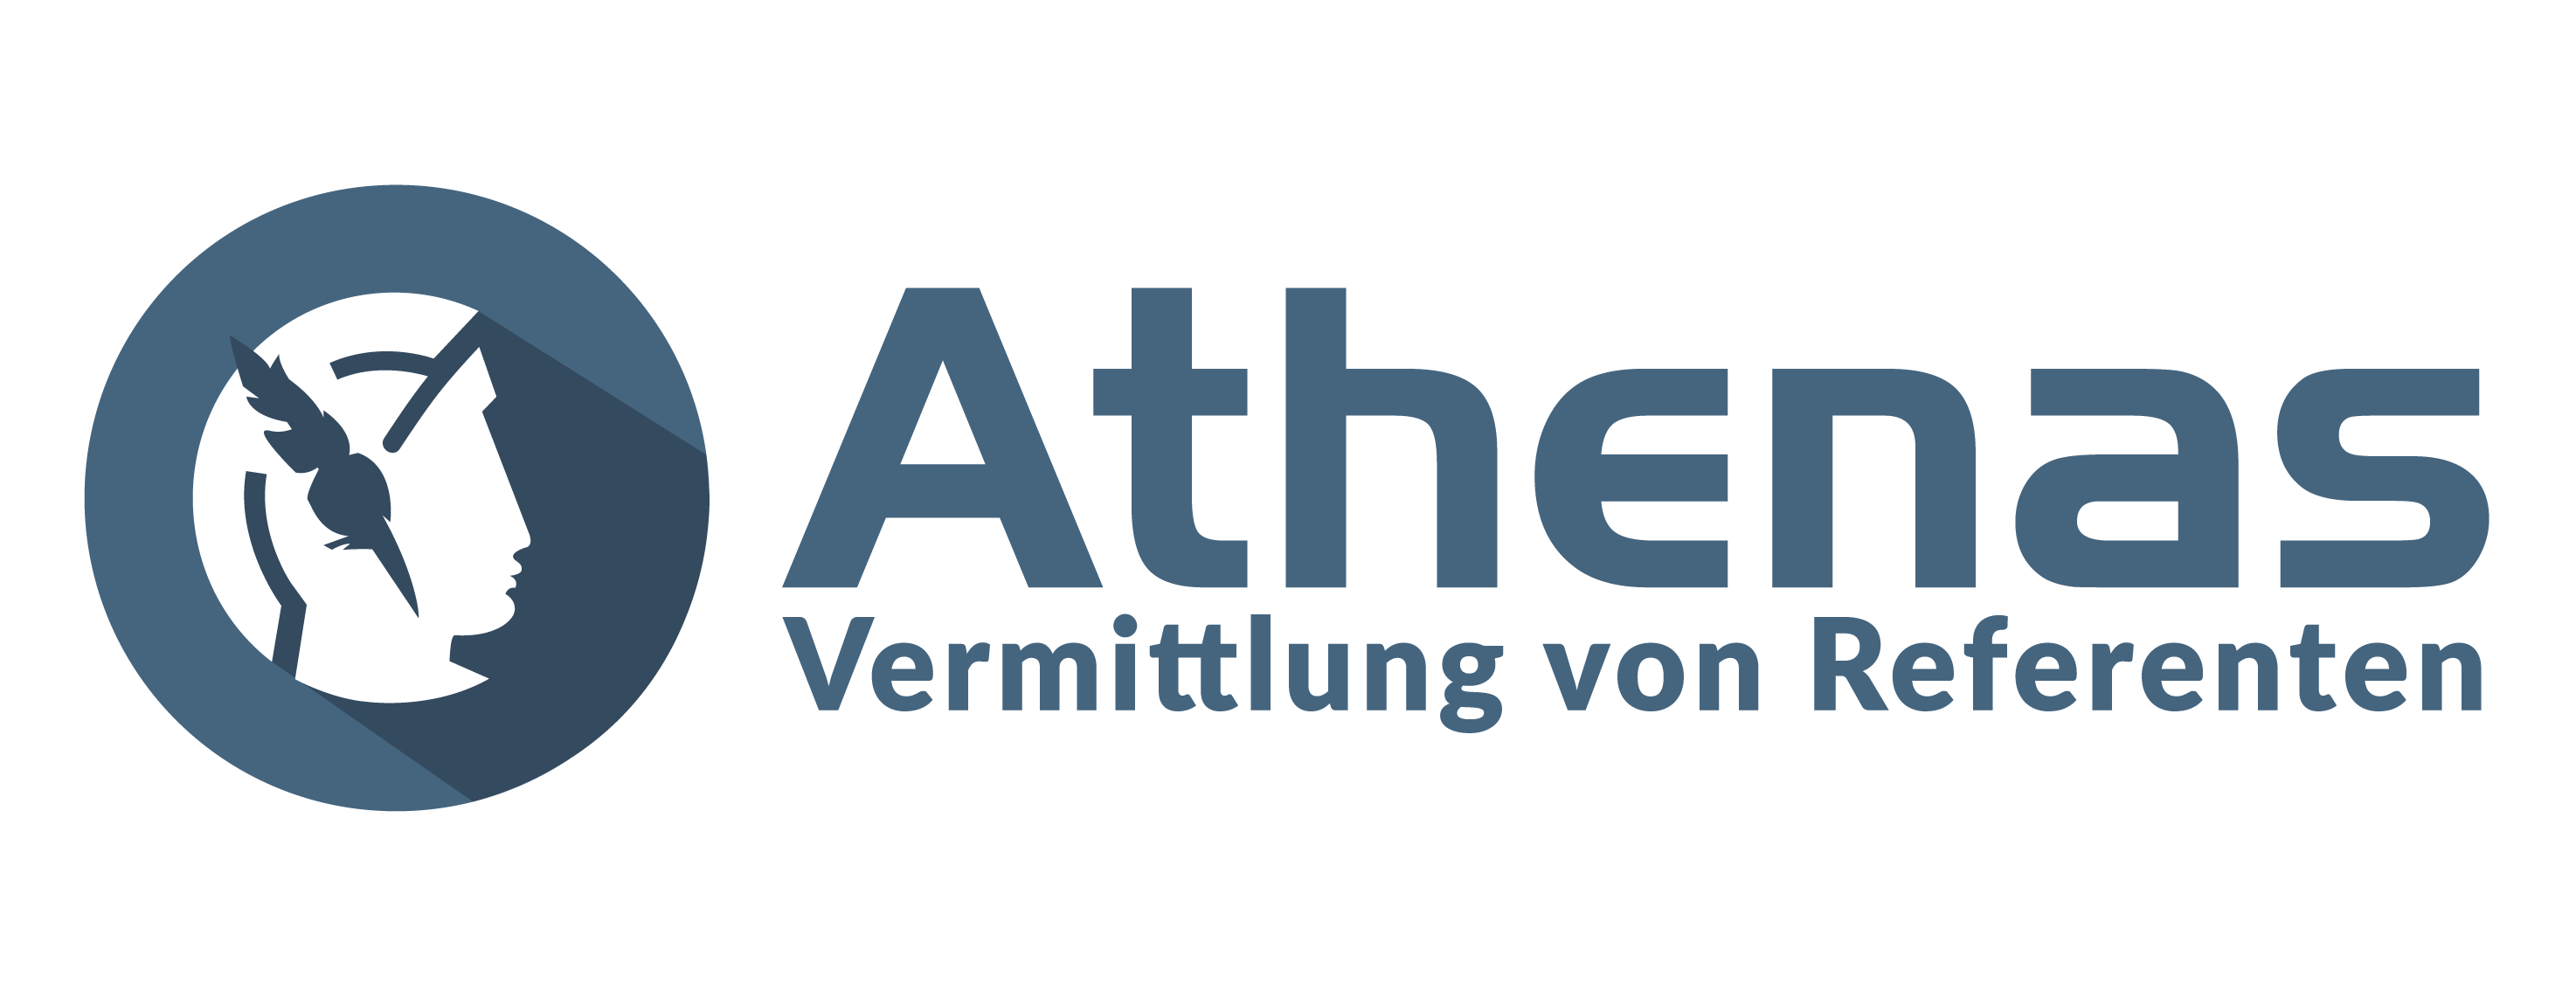 Athenas Referentenvermittung für Events: Partner im Blickwinkel KUNDE Club